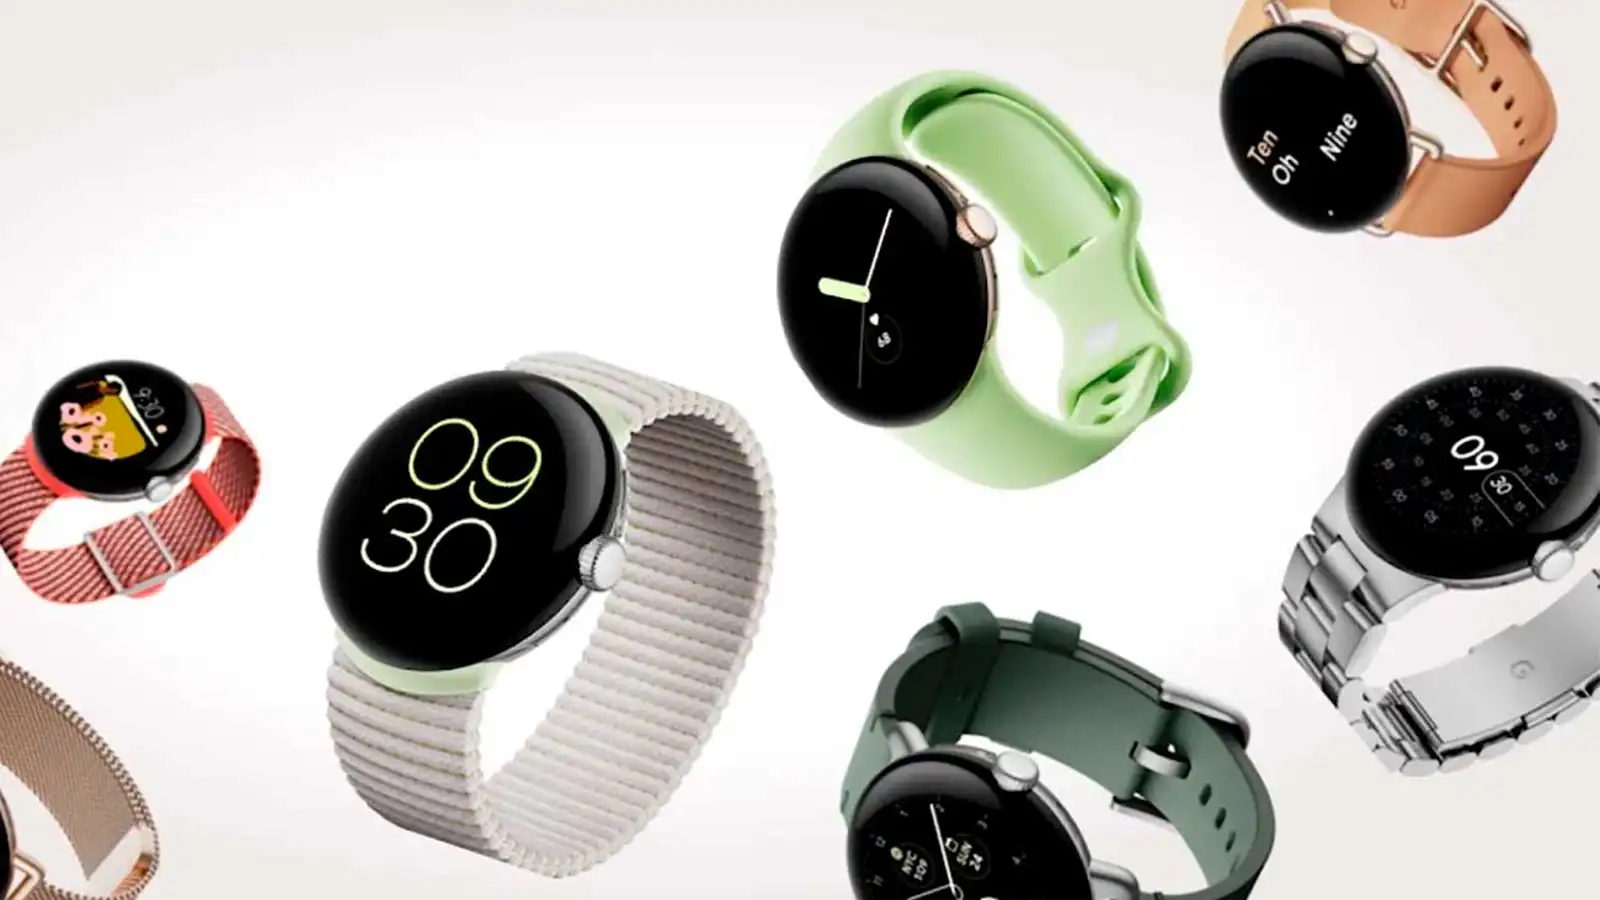 Featured image for “¡Oficial! Google presenta su primer smartwatch, el Pixel Watch”